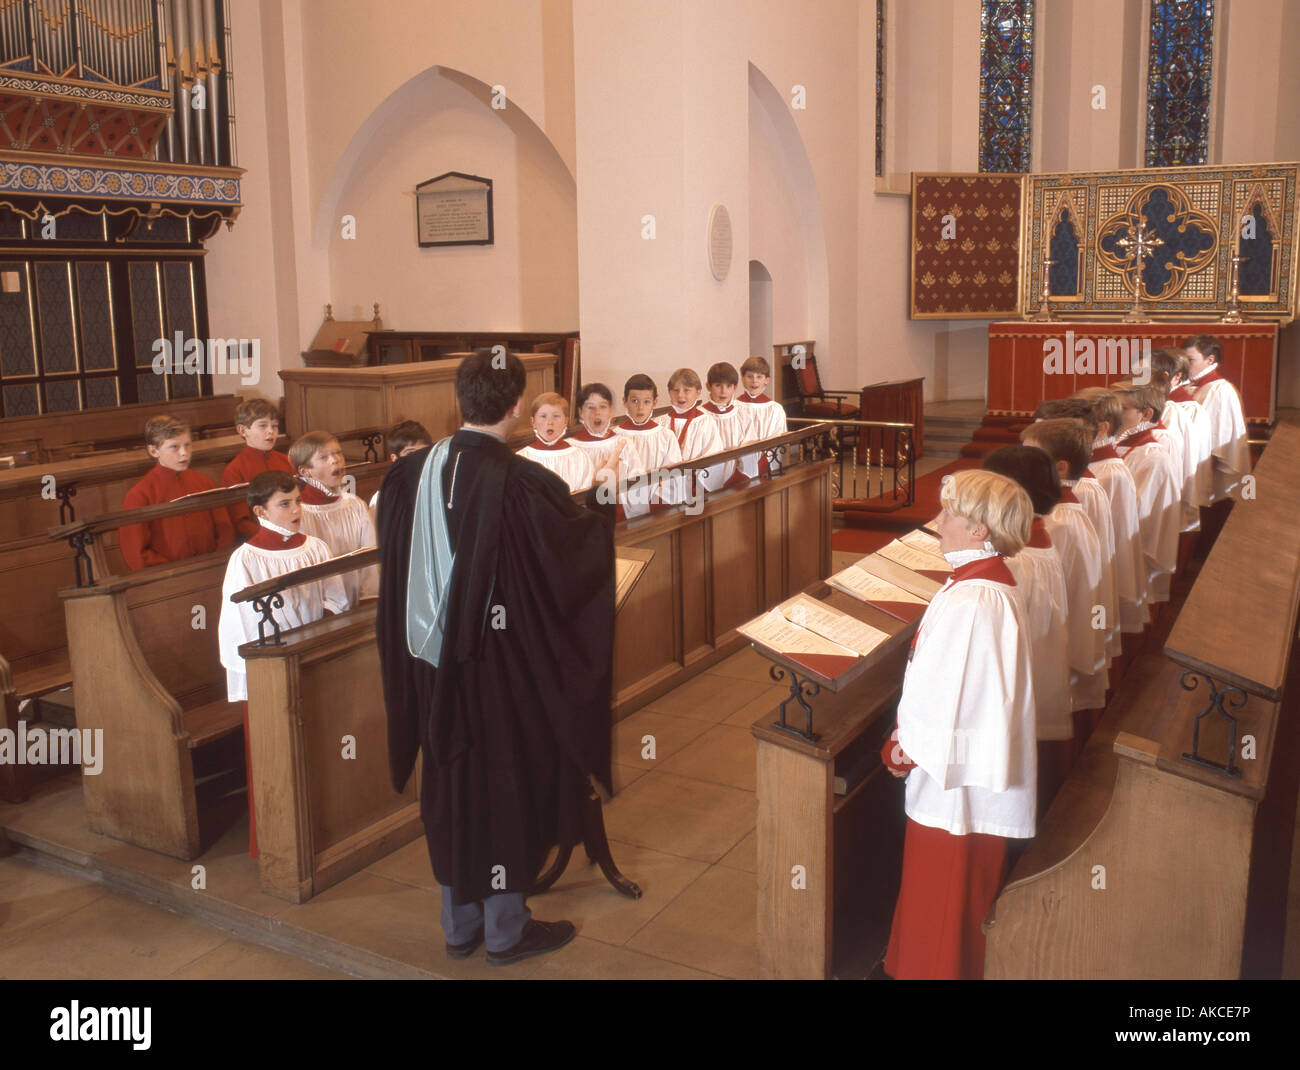 Boy's choir singing in church, Guildford, Surrey, England, United Kingdom Stock Photo